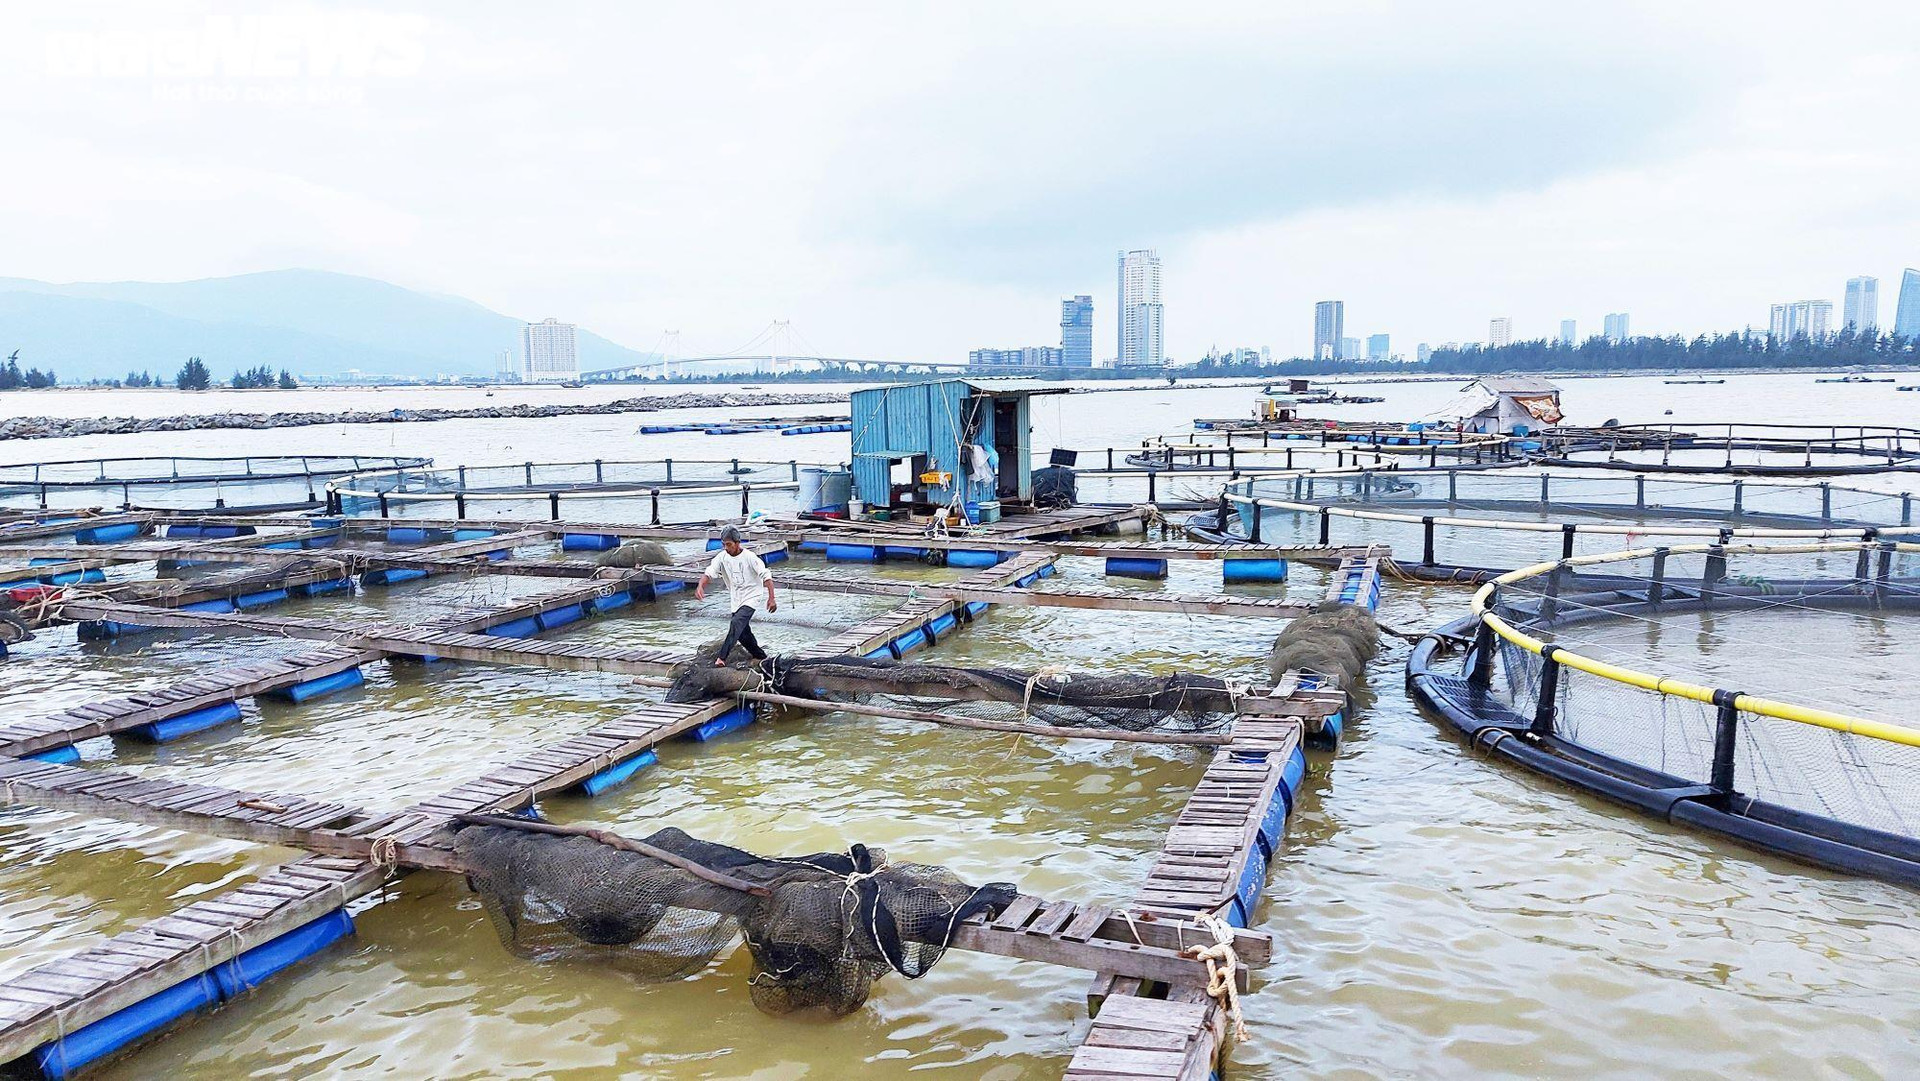 Nguy cơ ôm nợ hàng trăm tỷ đồng, người nuôi cá ở Đà Nẵng cầu cứu - 1